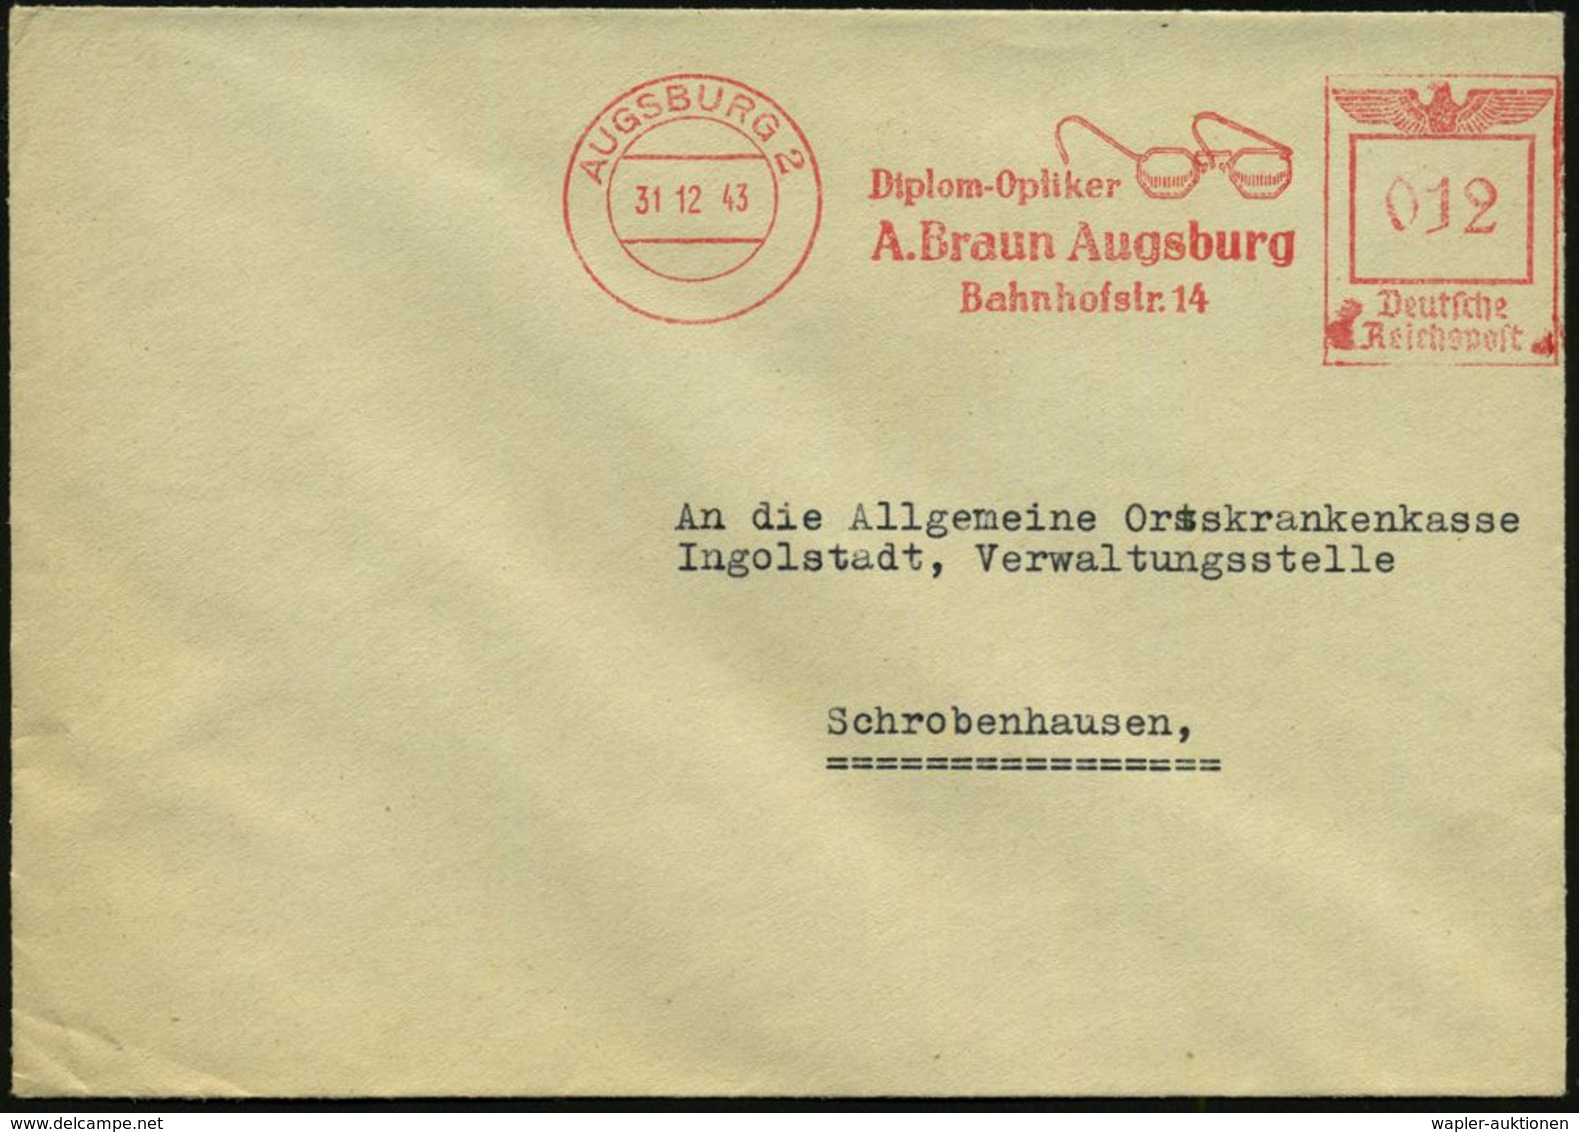 AUGE / OPHTALMOLOGIE / BLINDHEIT : AUGSBURG 2/ Diplom-Optiker/ A.Braun.. 1943 (31.12.) AFS = Brille (rs. Abs.-Vordr.) Kl - Malattie